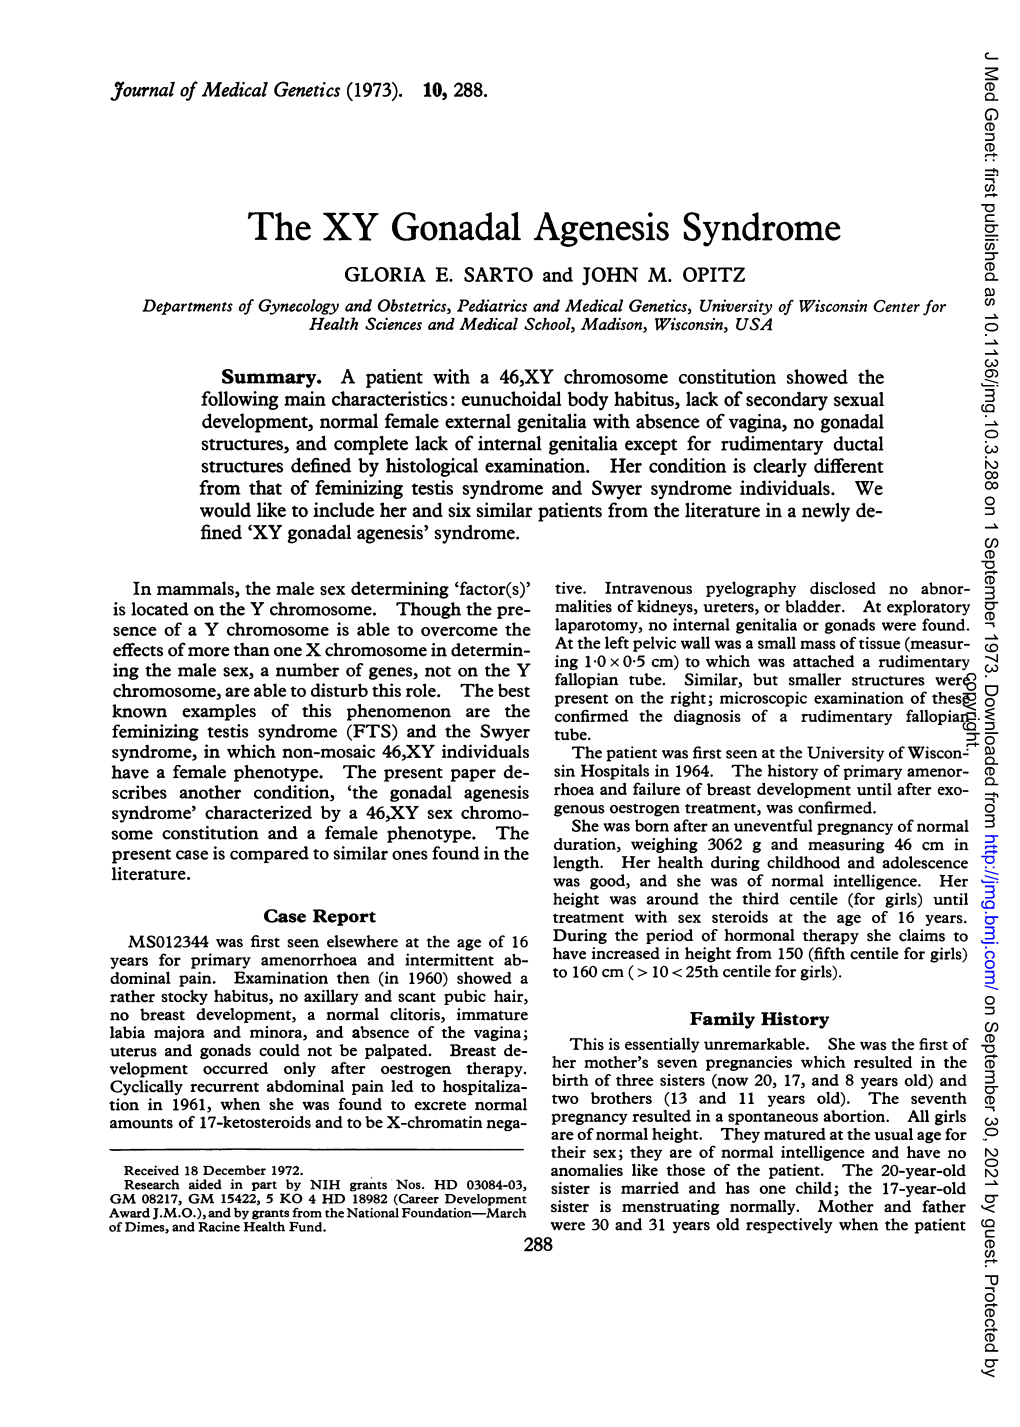 The XY Gonadal Agenesis Syndrome GLORIA E